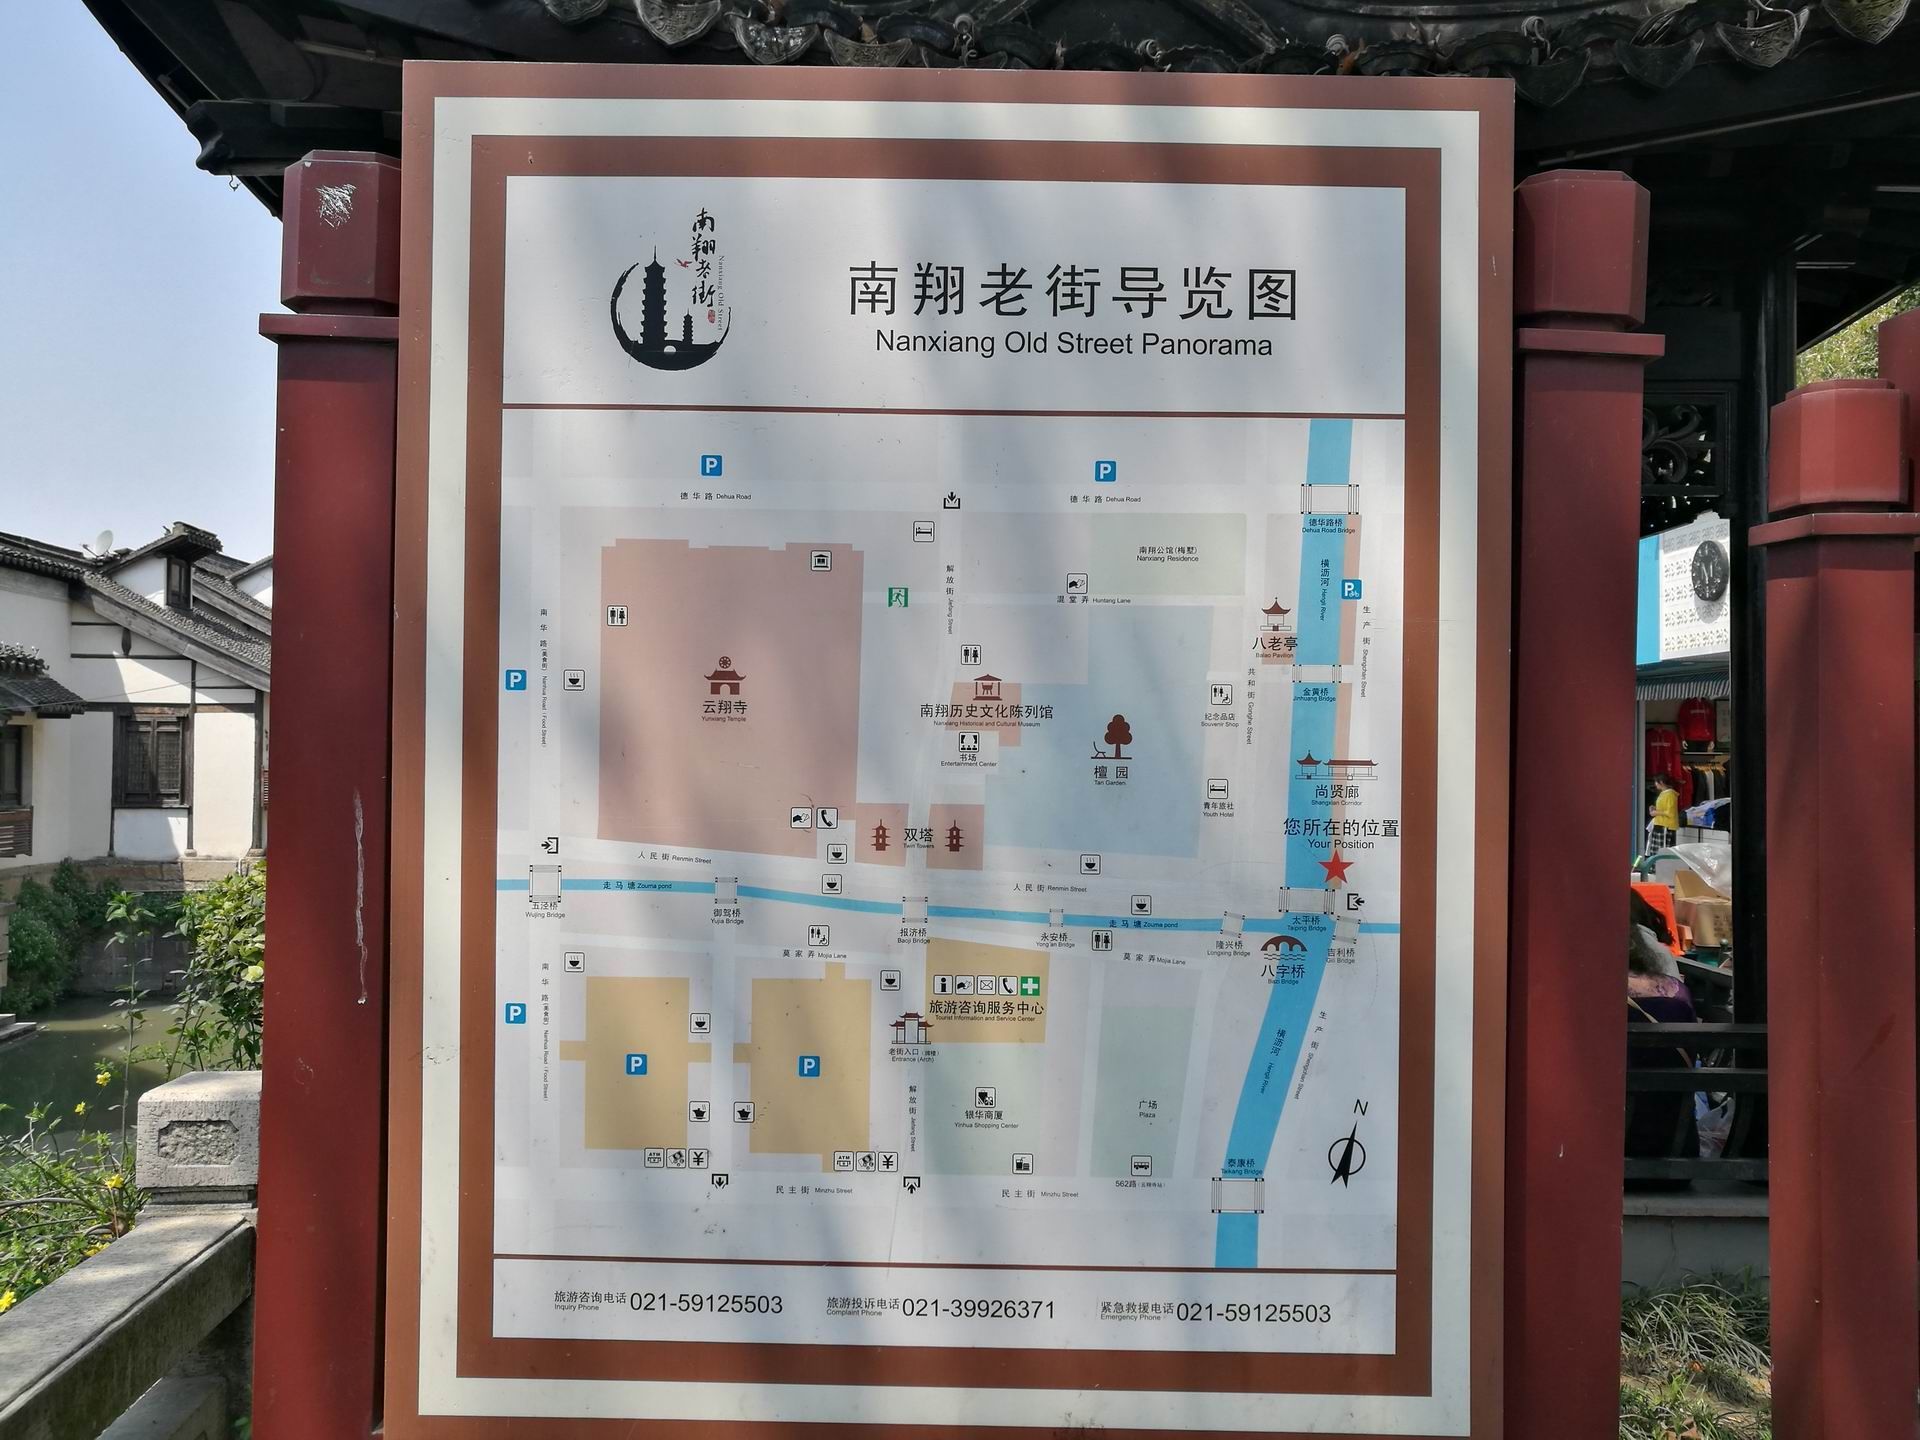 【携程攻略】上海南翔古镇景点,南翔古镇位于上海市嘉定区的南翔镇